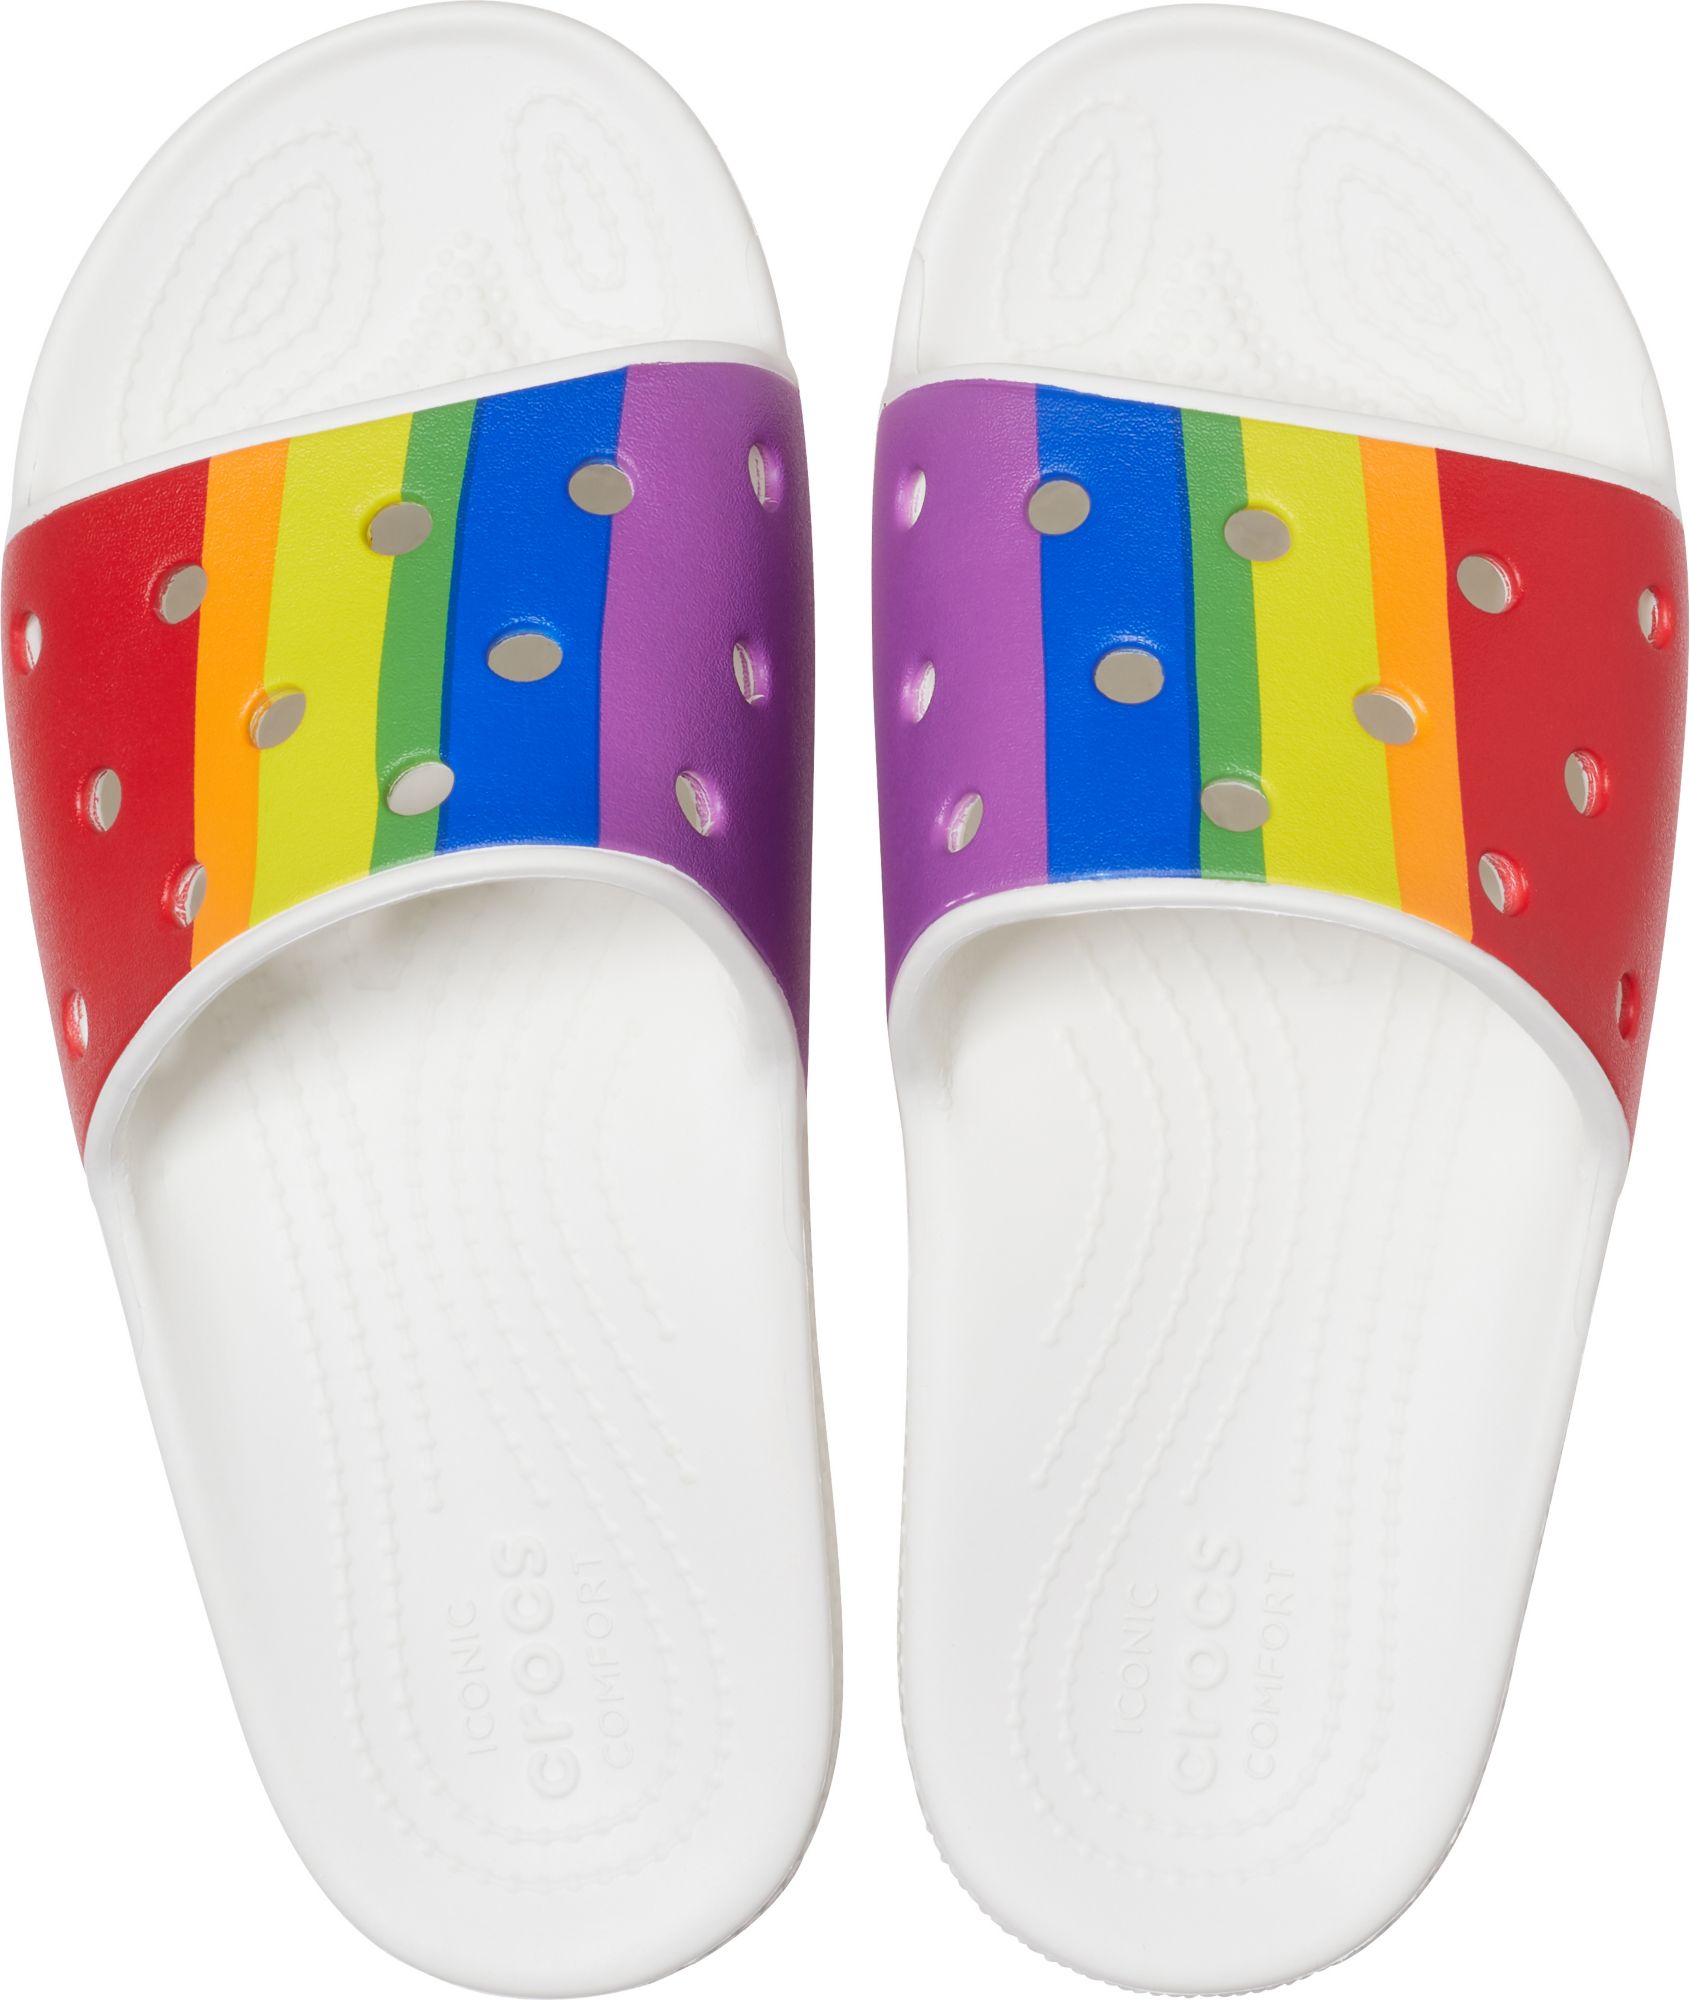 crocs rainbow slides